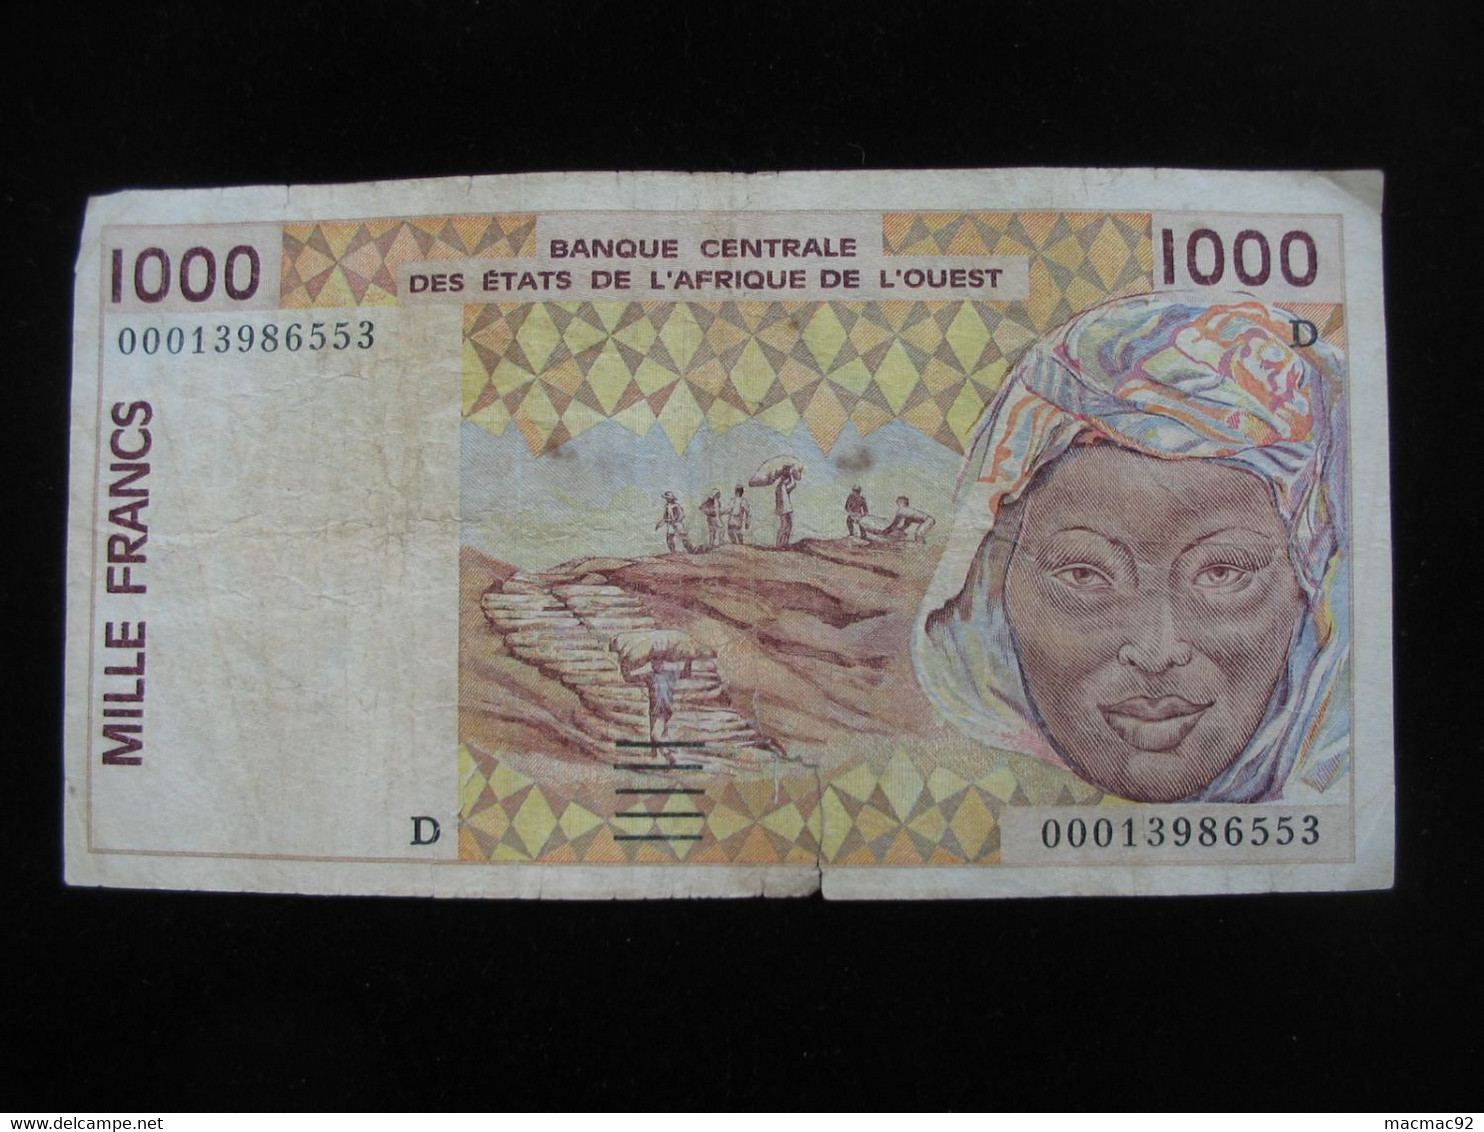 MALI - 1000 Francs  2000/2001 D - Banque Centrale Des états De L'Afrique De L'ouest  **** ACHAT IMMEDIAT **** - Malí